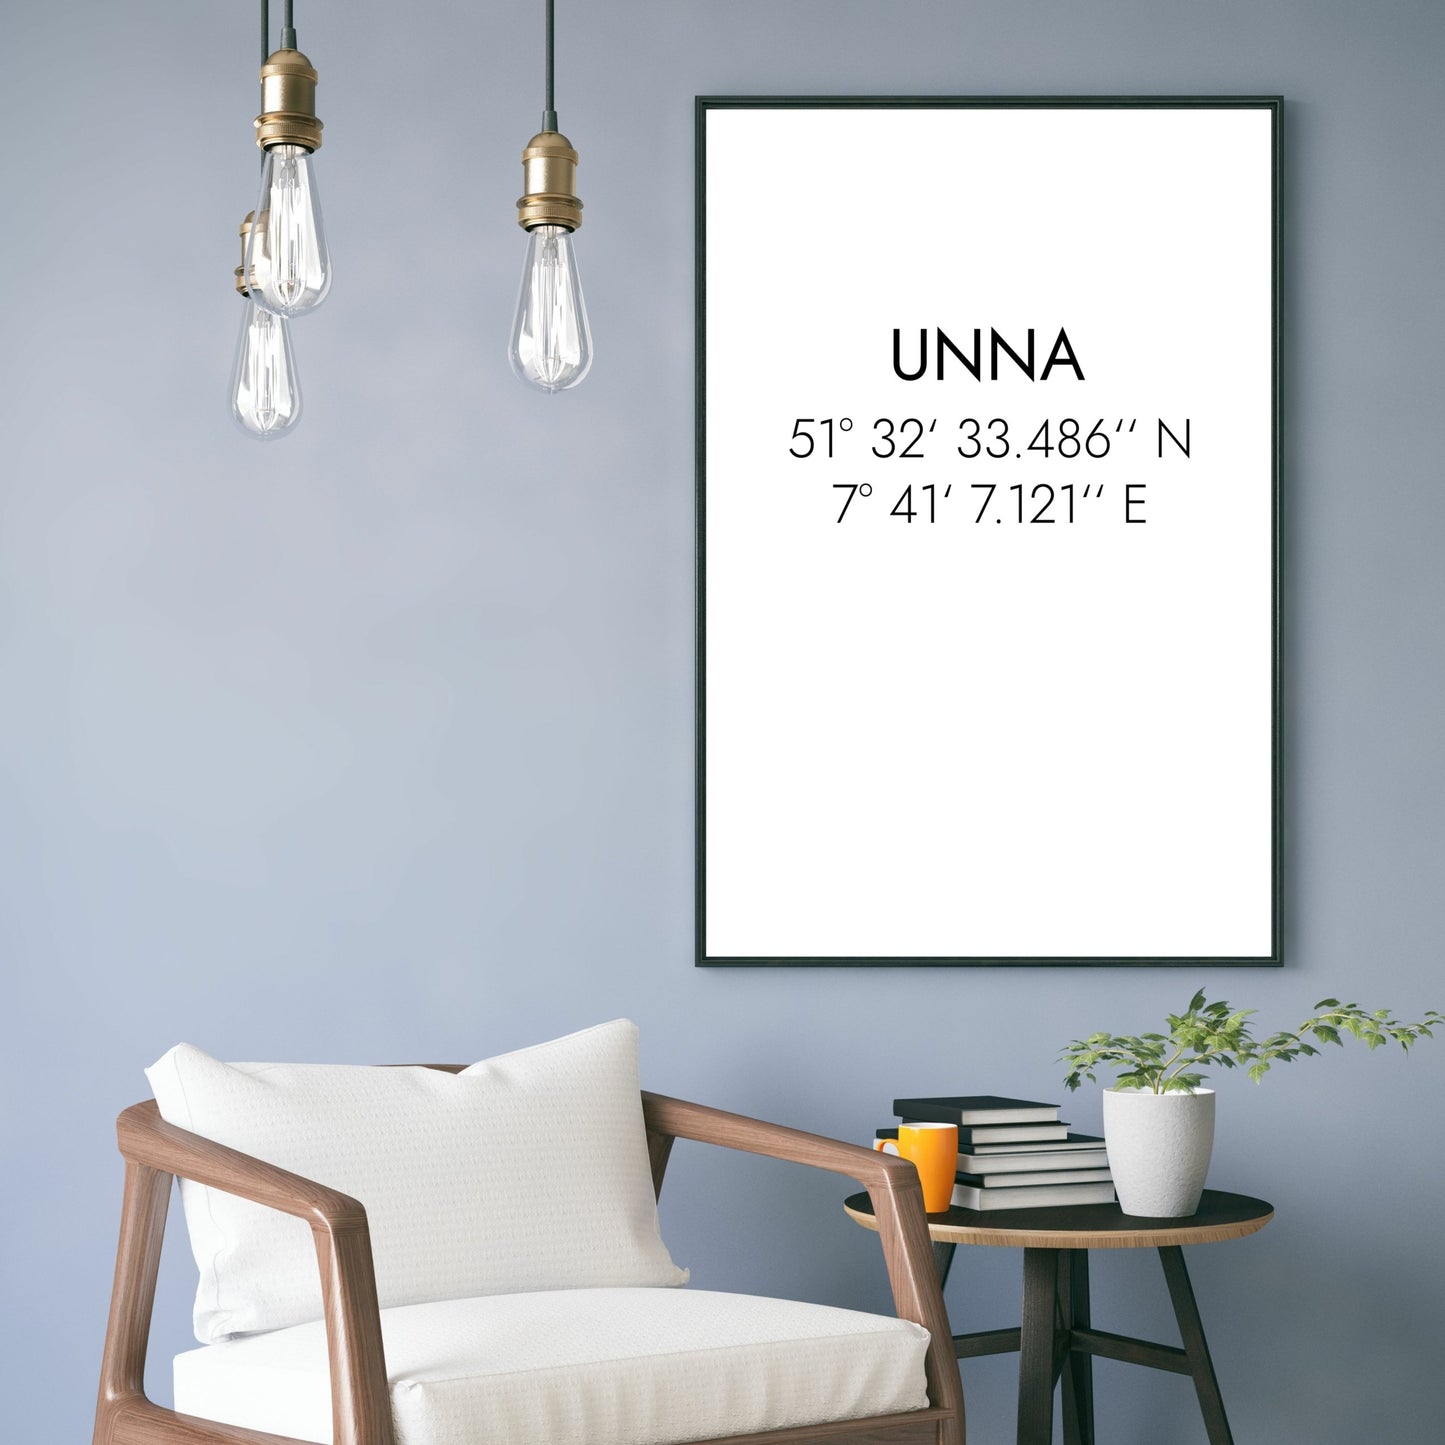 Poster Unna Koordinaten #1